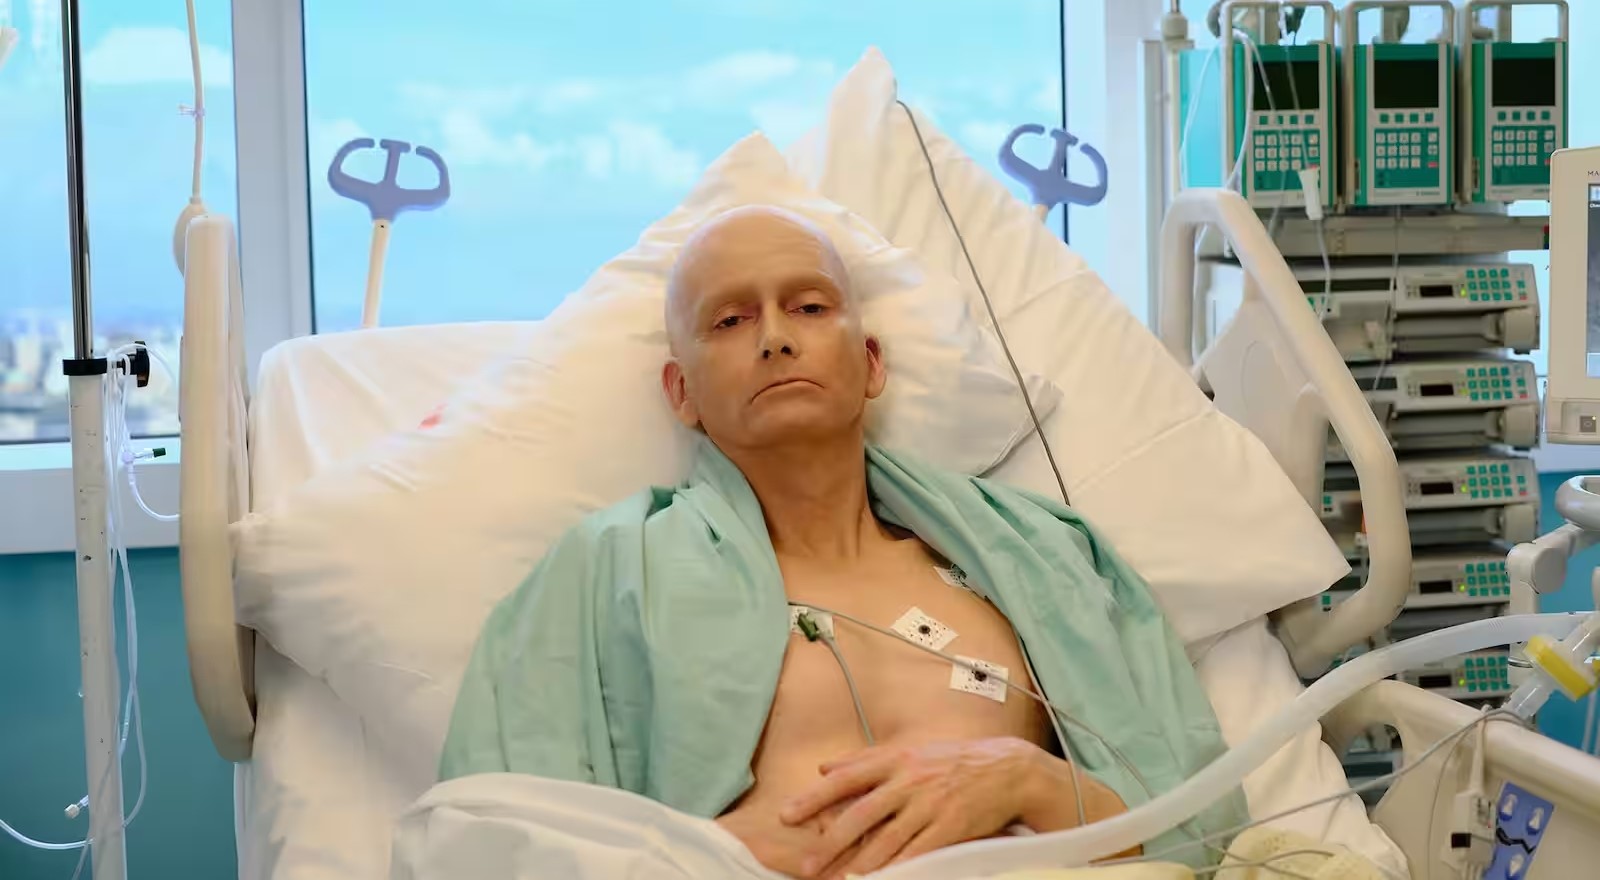 #"Litvinenko"-Miniserie mit David Tennant feiert diesen Monat ihre Deutschlandpremiere